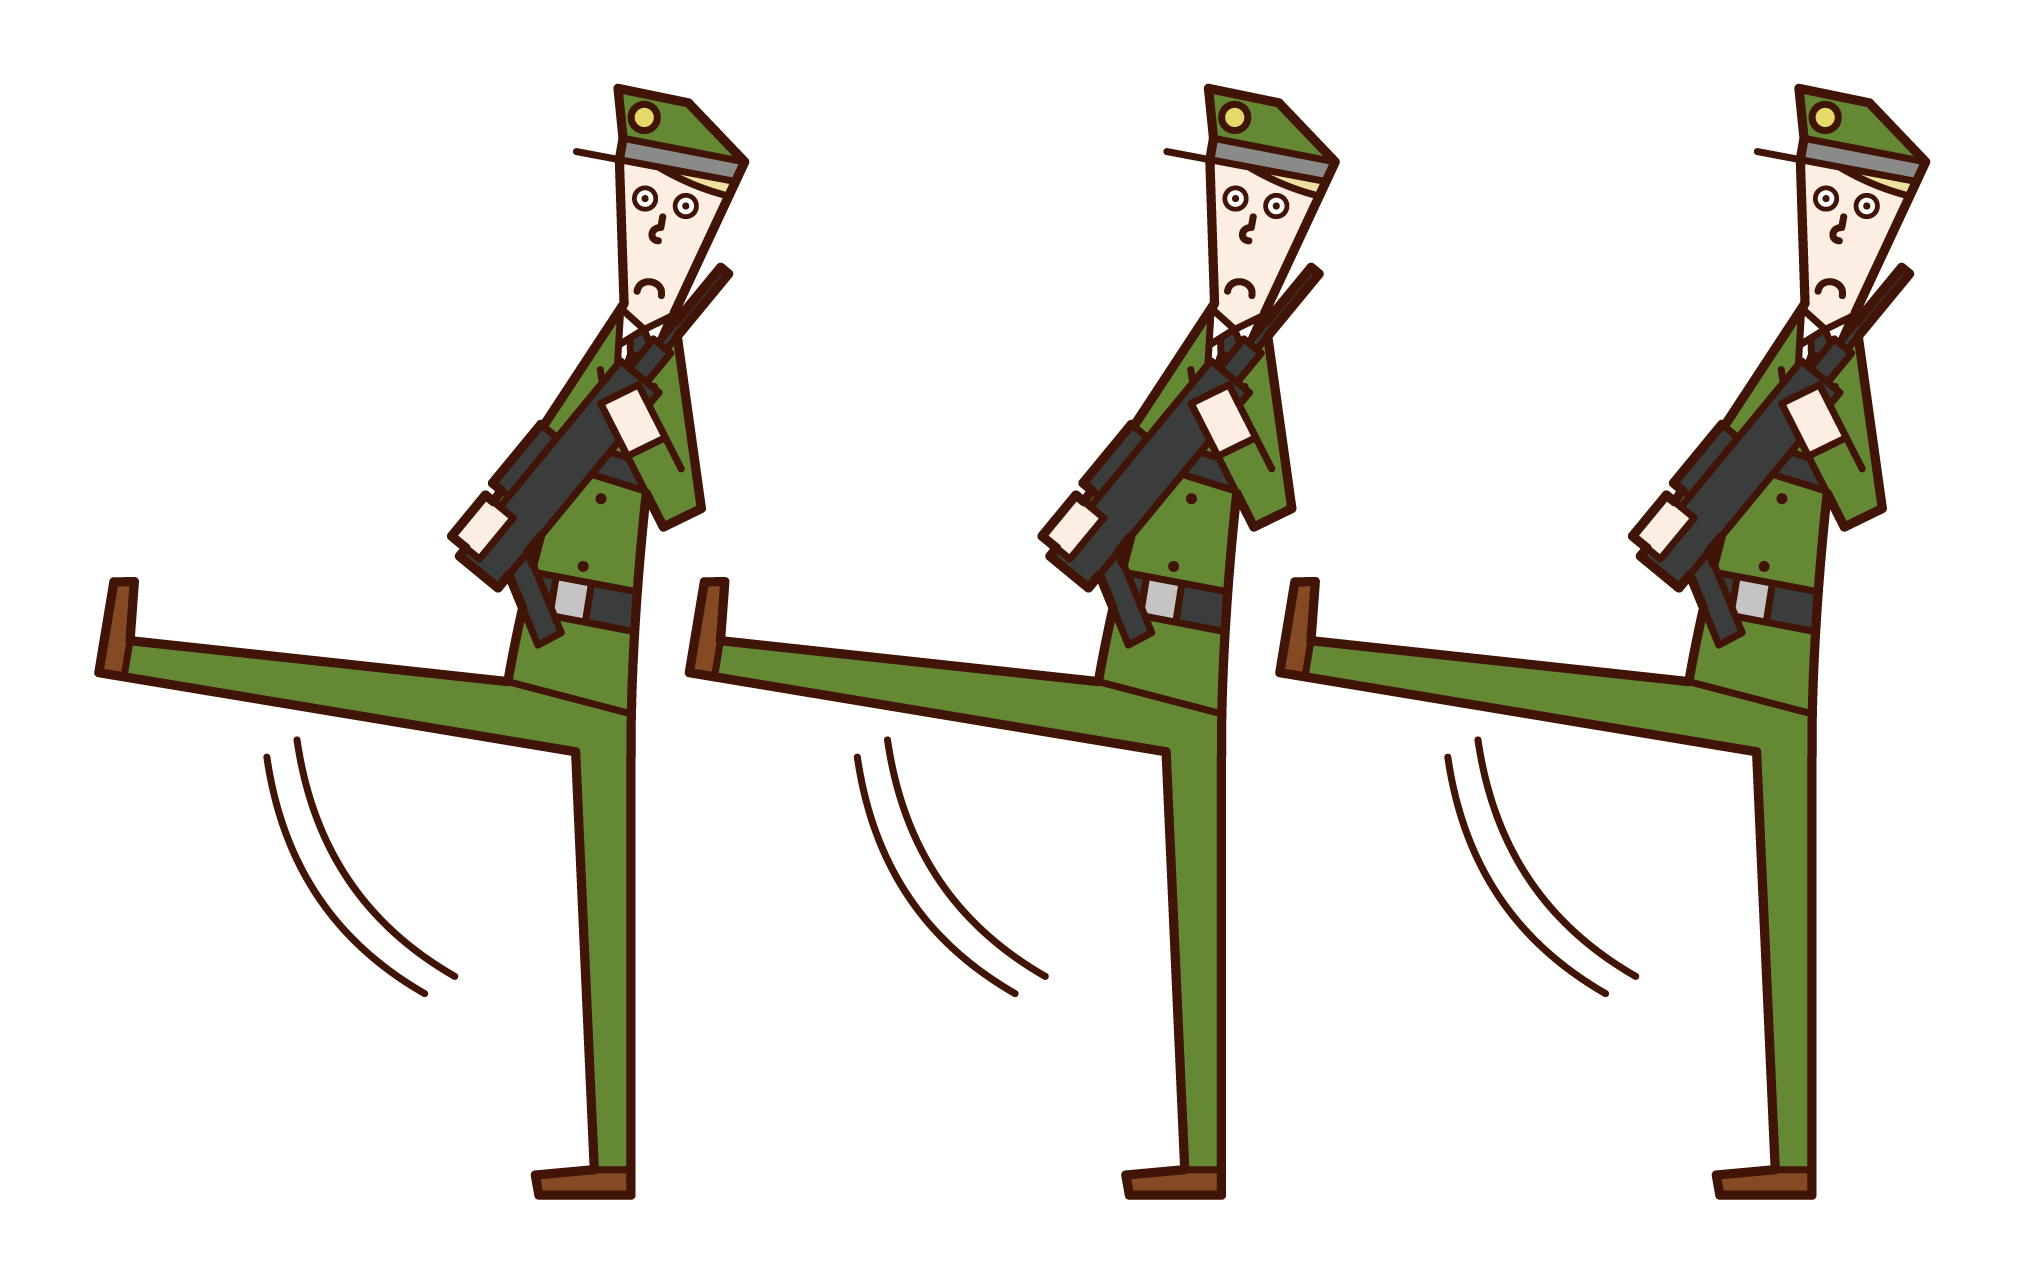 진보적 인 군대와 군인 (남성)의 그림